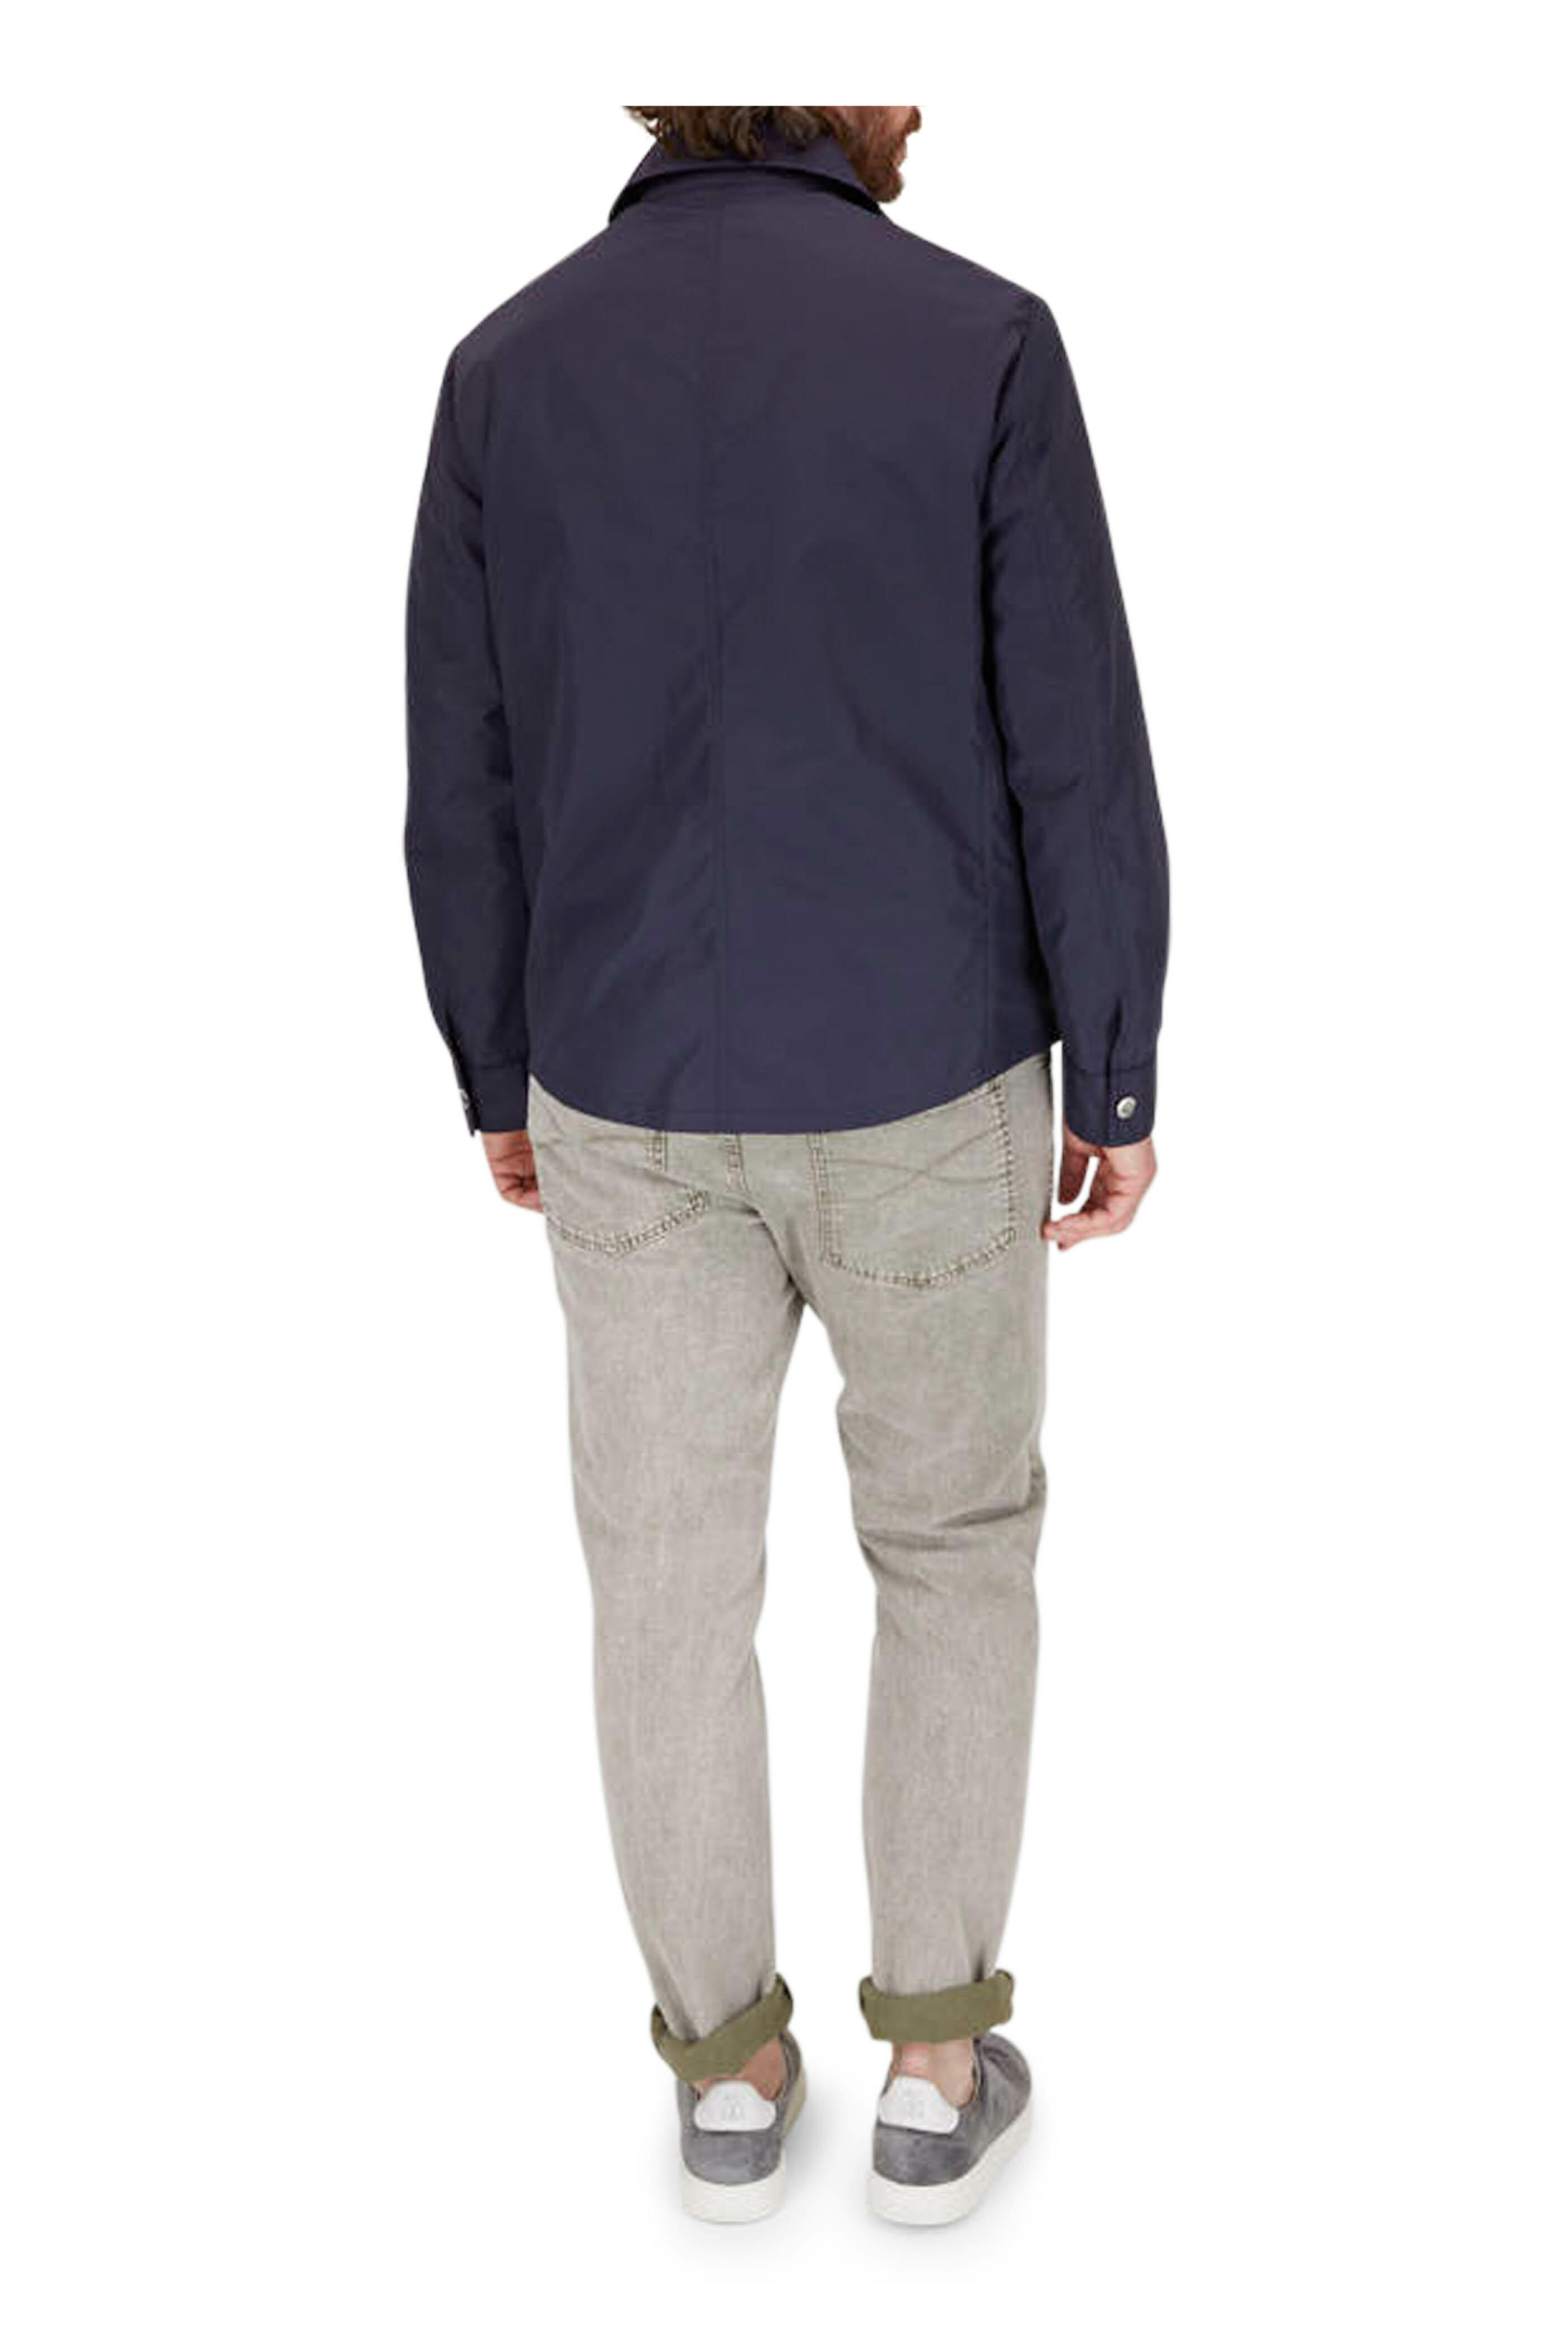 Brunello Cucinelli - Navy Nylon Shirt Jacket | Mitchell Stores